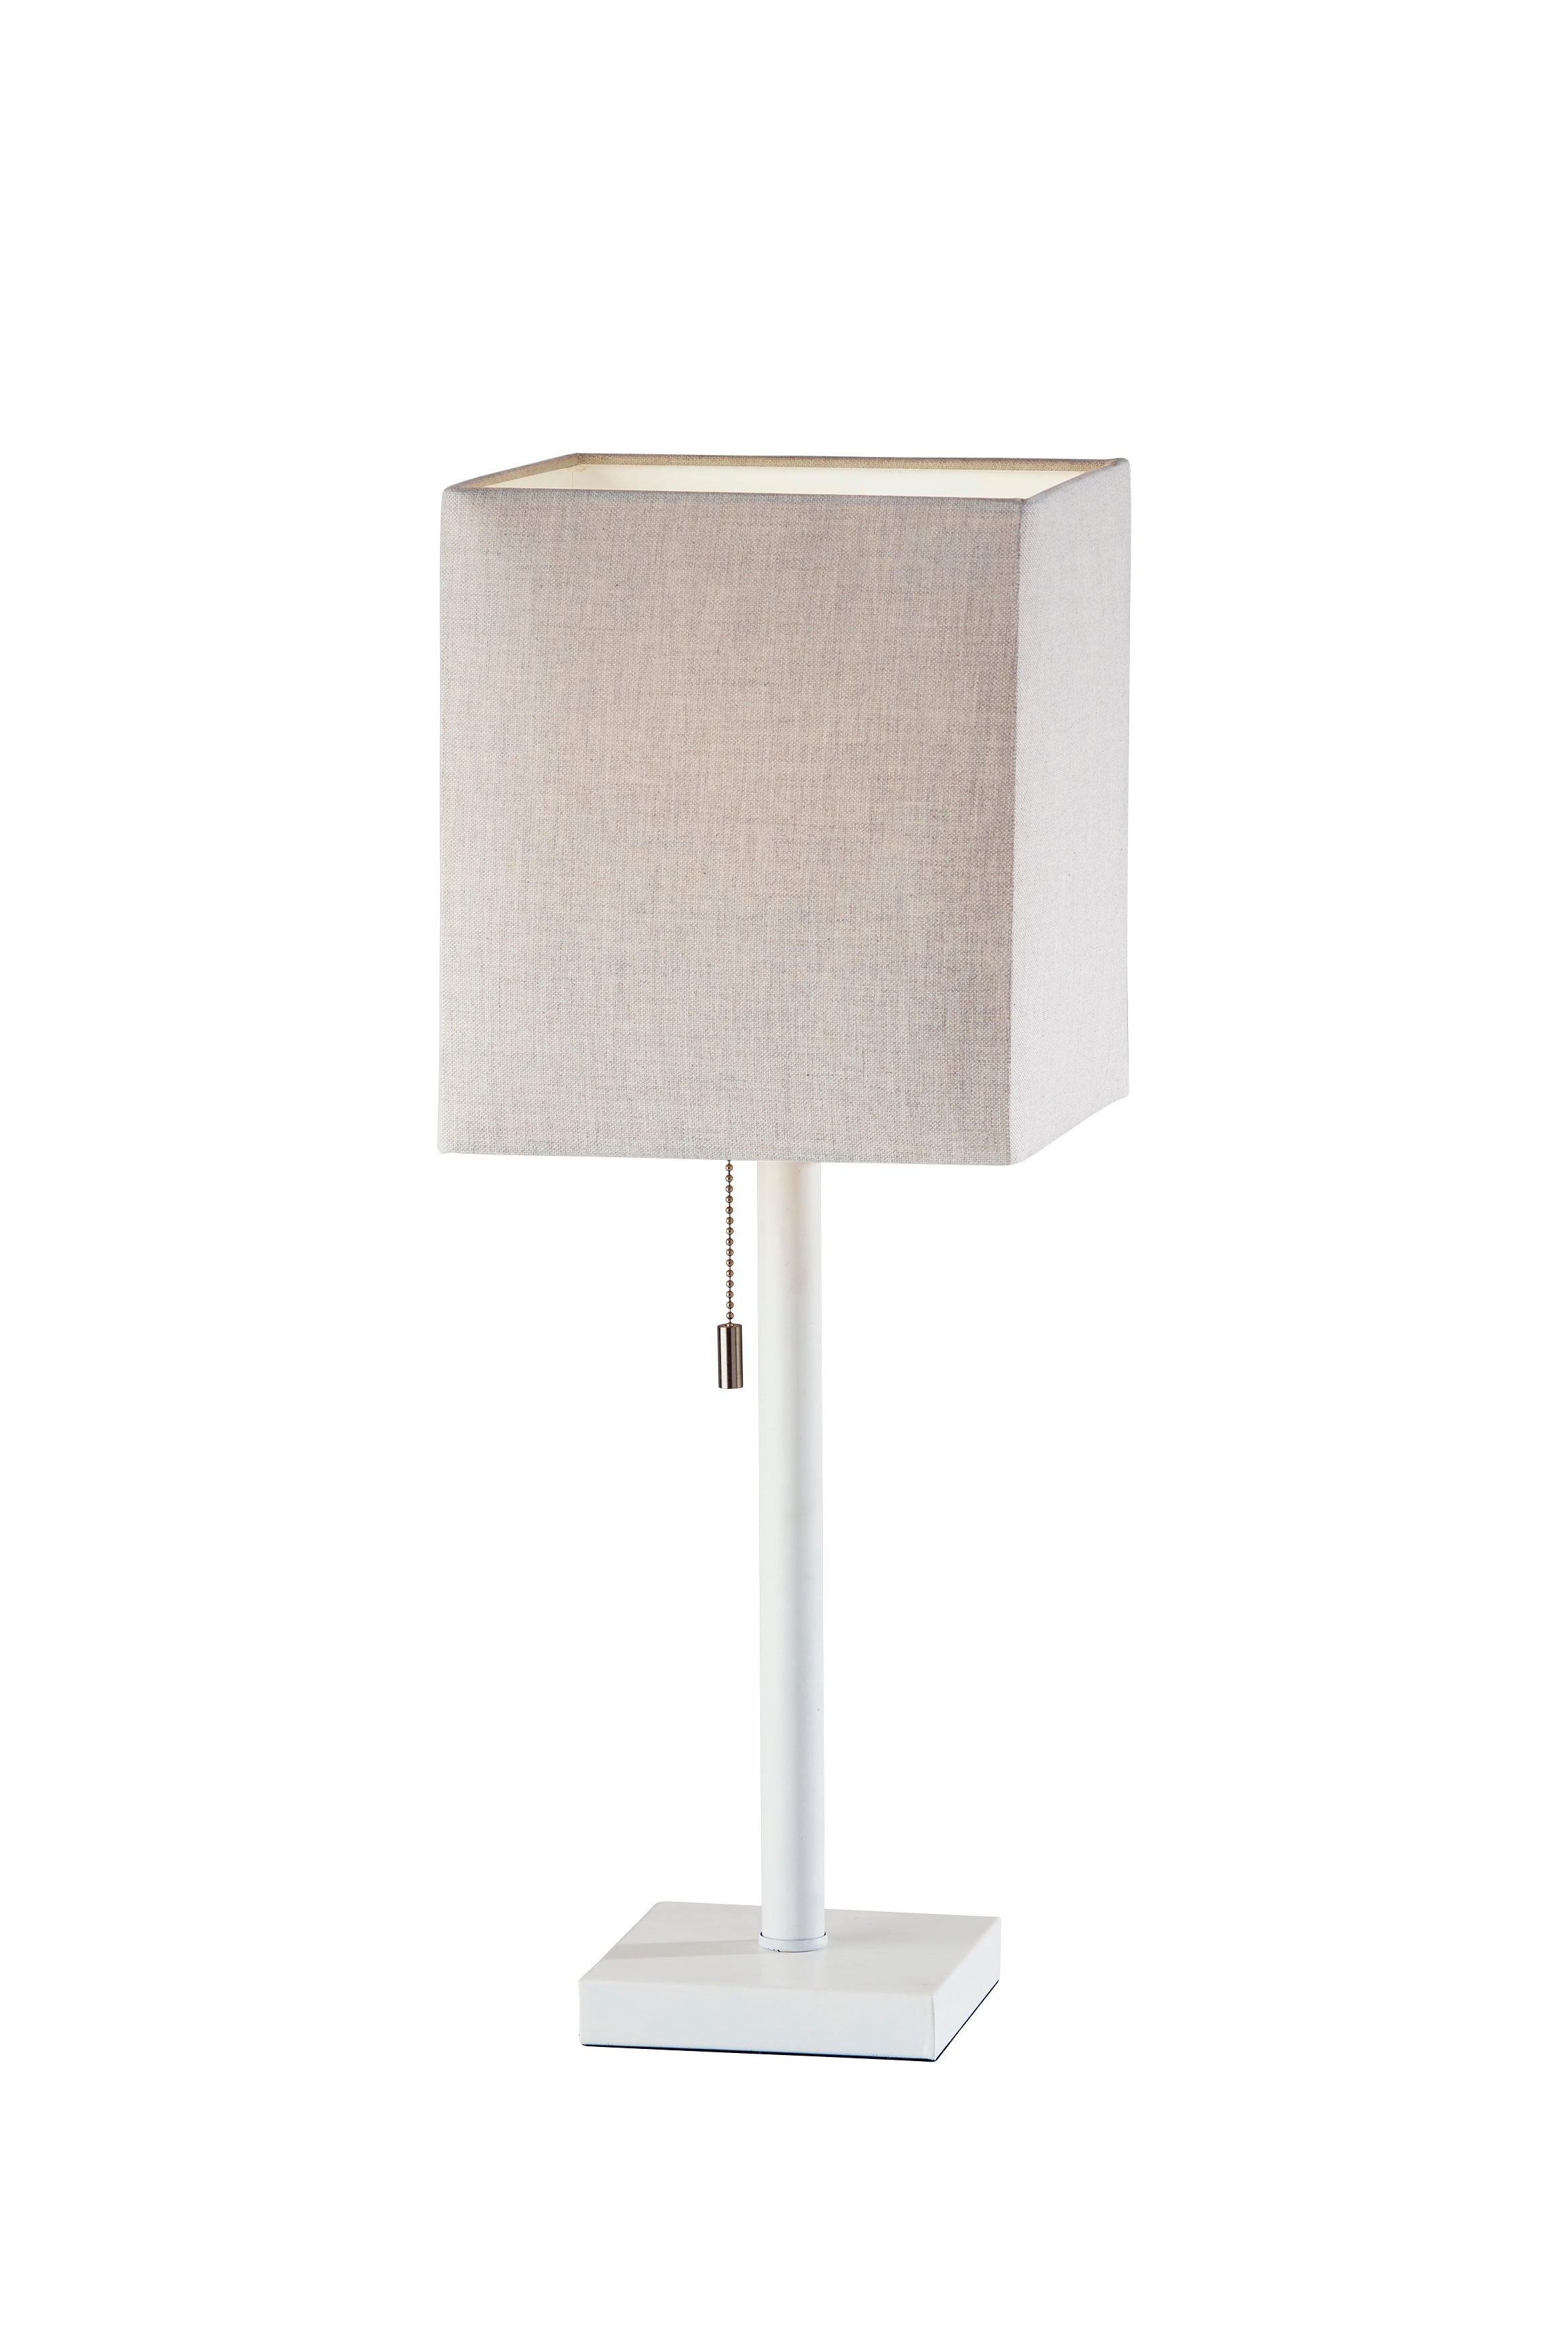 ESTELLE Lampe sur table Blanc - 1566-02 | ADESSO